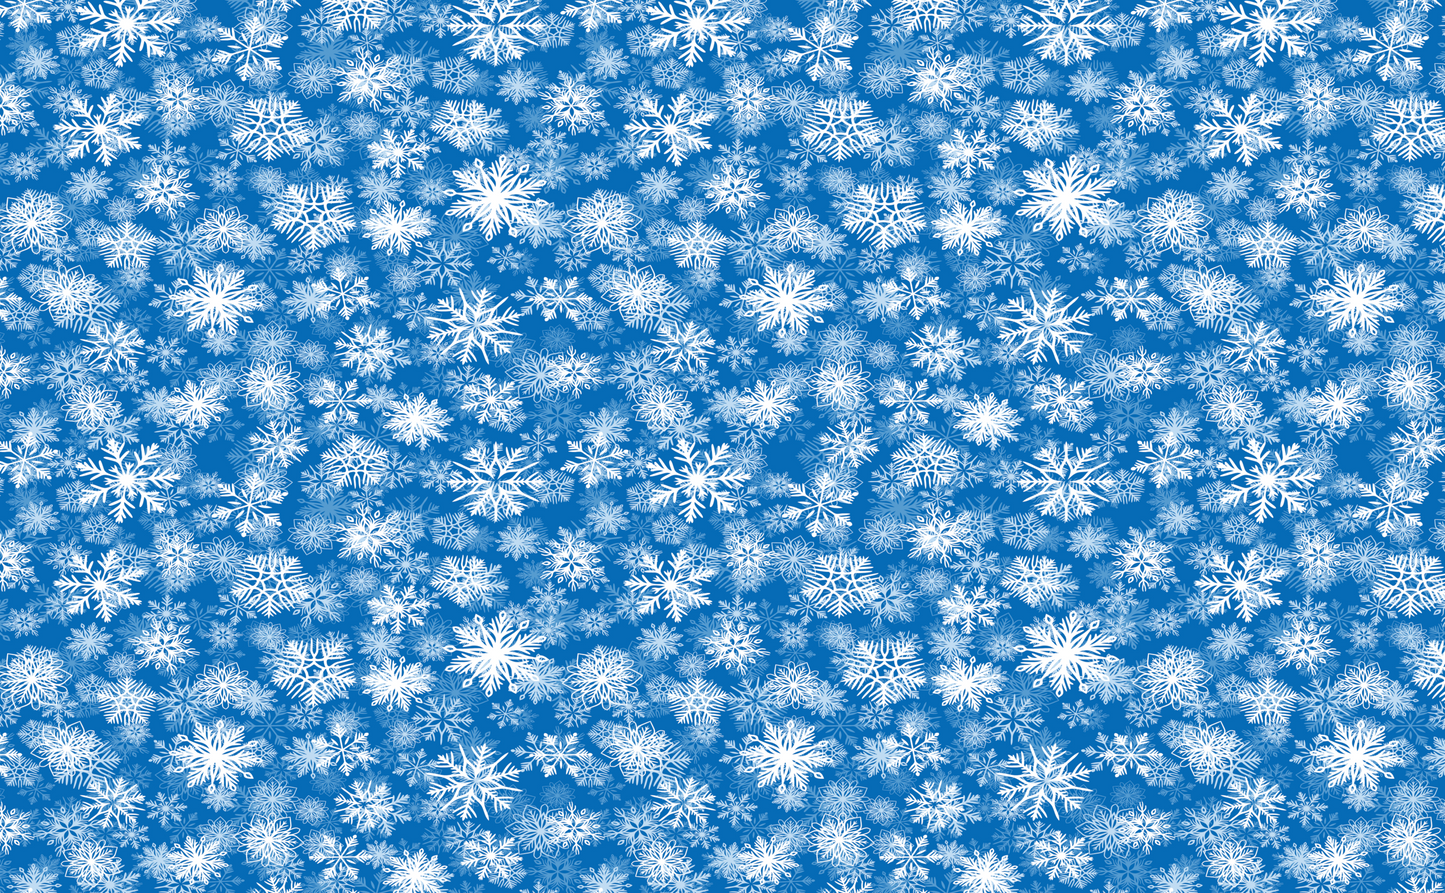 FANCY AF WOOD Snowflakes - Christmas